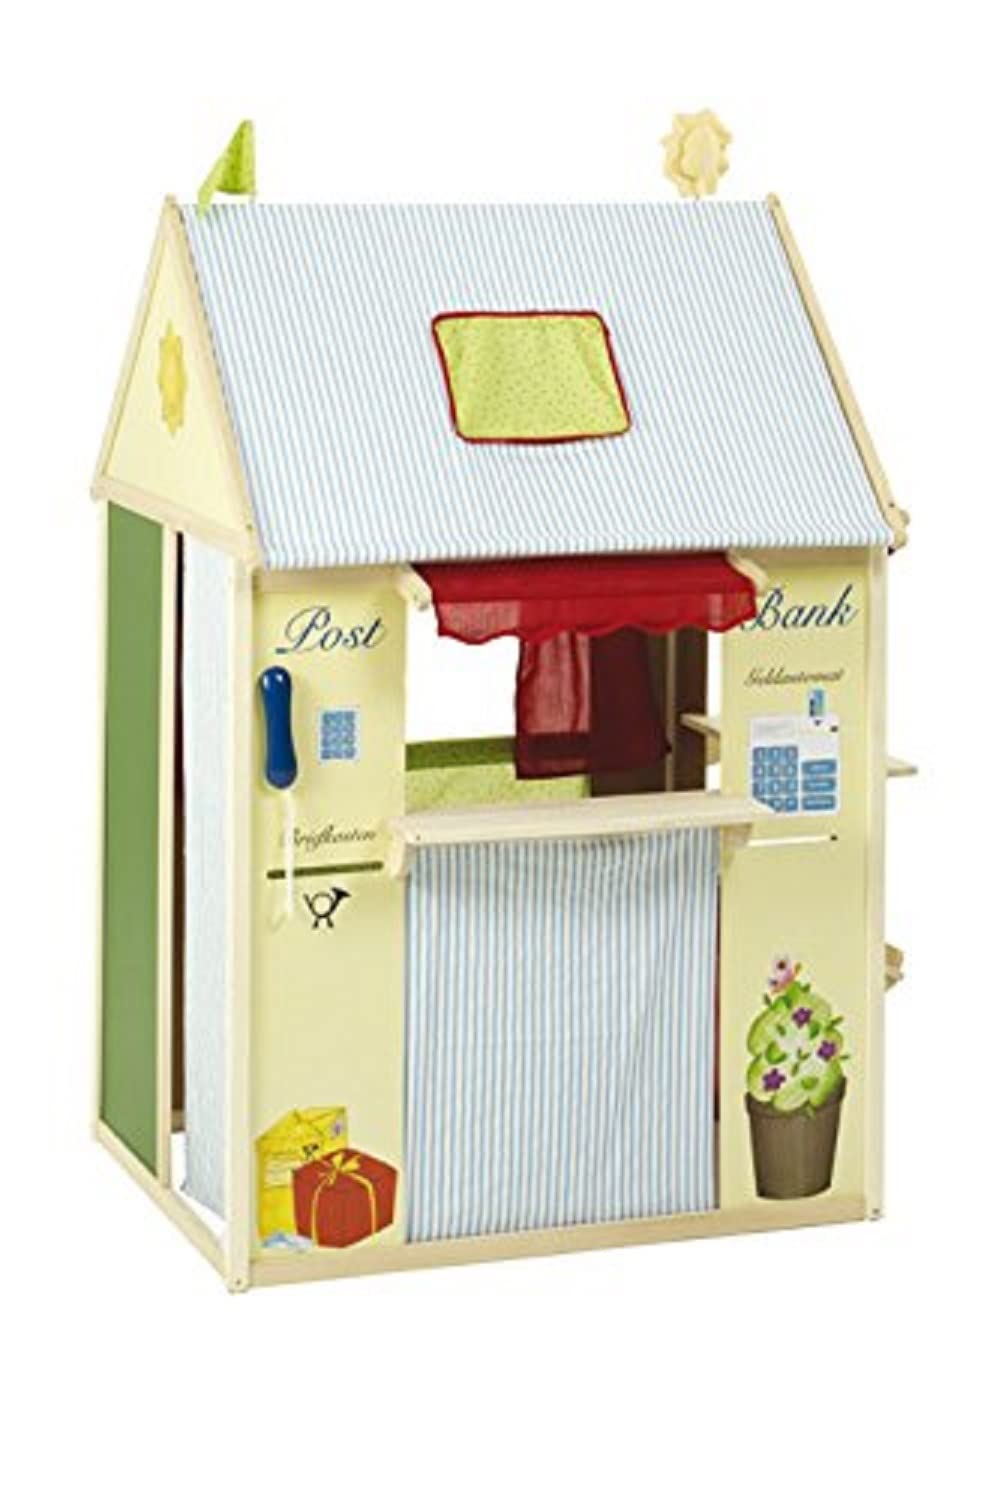 roba Spielhaus-Kombination, Rollenspiel Haus für Kinder, verwendbar als Kaufladen, Kasperletheater, Tafel, Schalter für Post/Bank/Kiosk